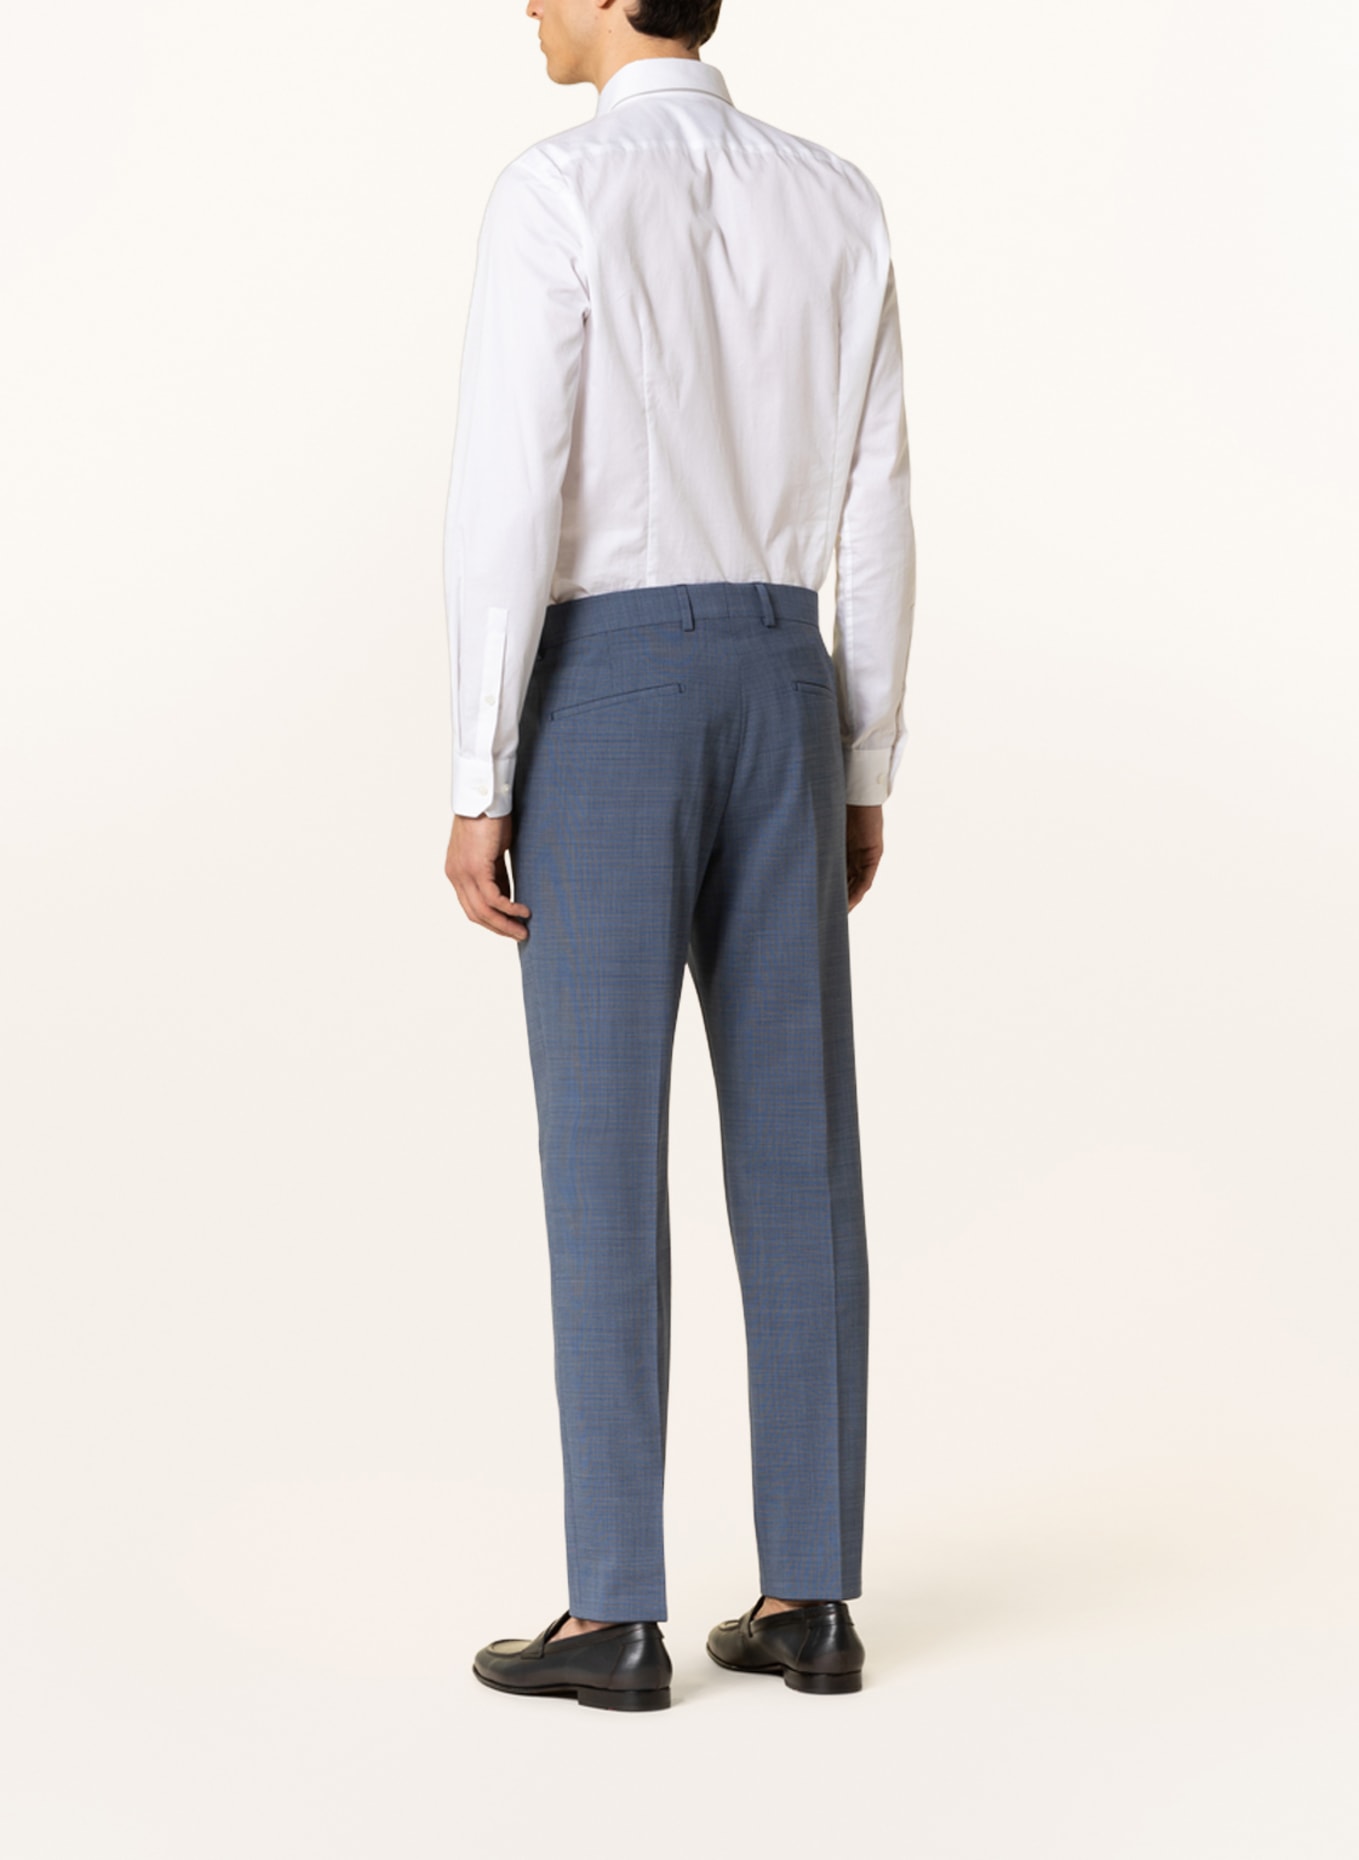 STRELLSON Suit trousers MAX slim fit, Color: 420 Medium Blue                420 (Image 4)